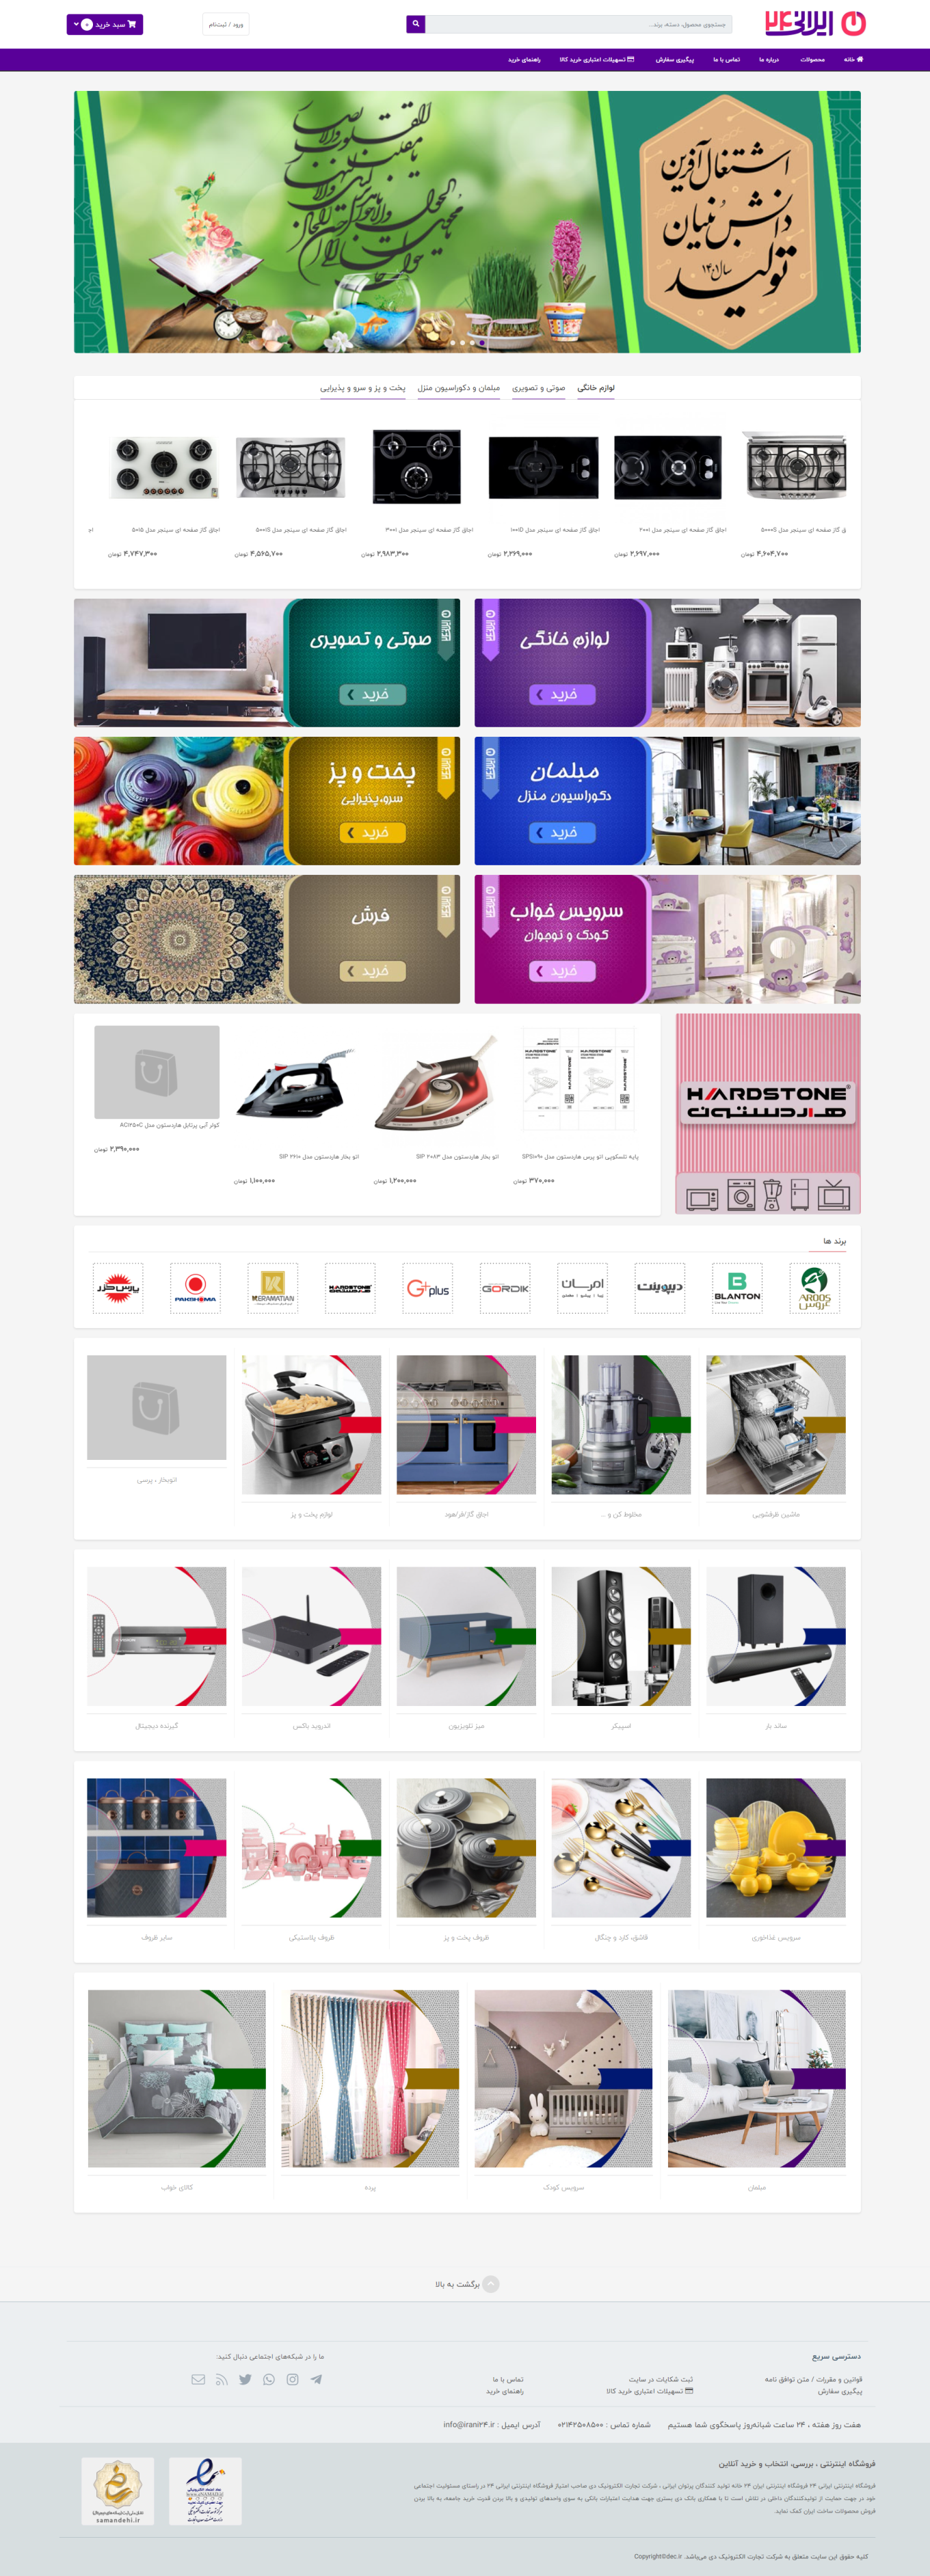 طراحی فروشگاه اینترنتی ایرانی24